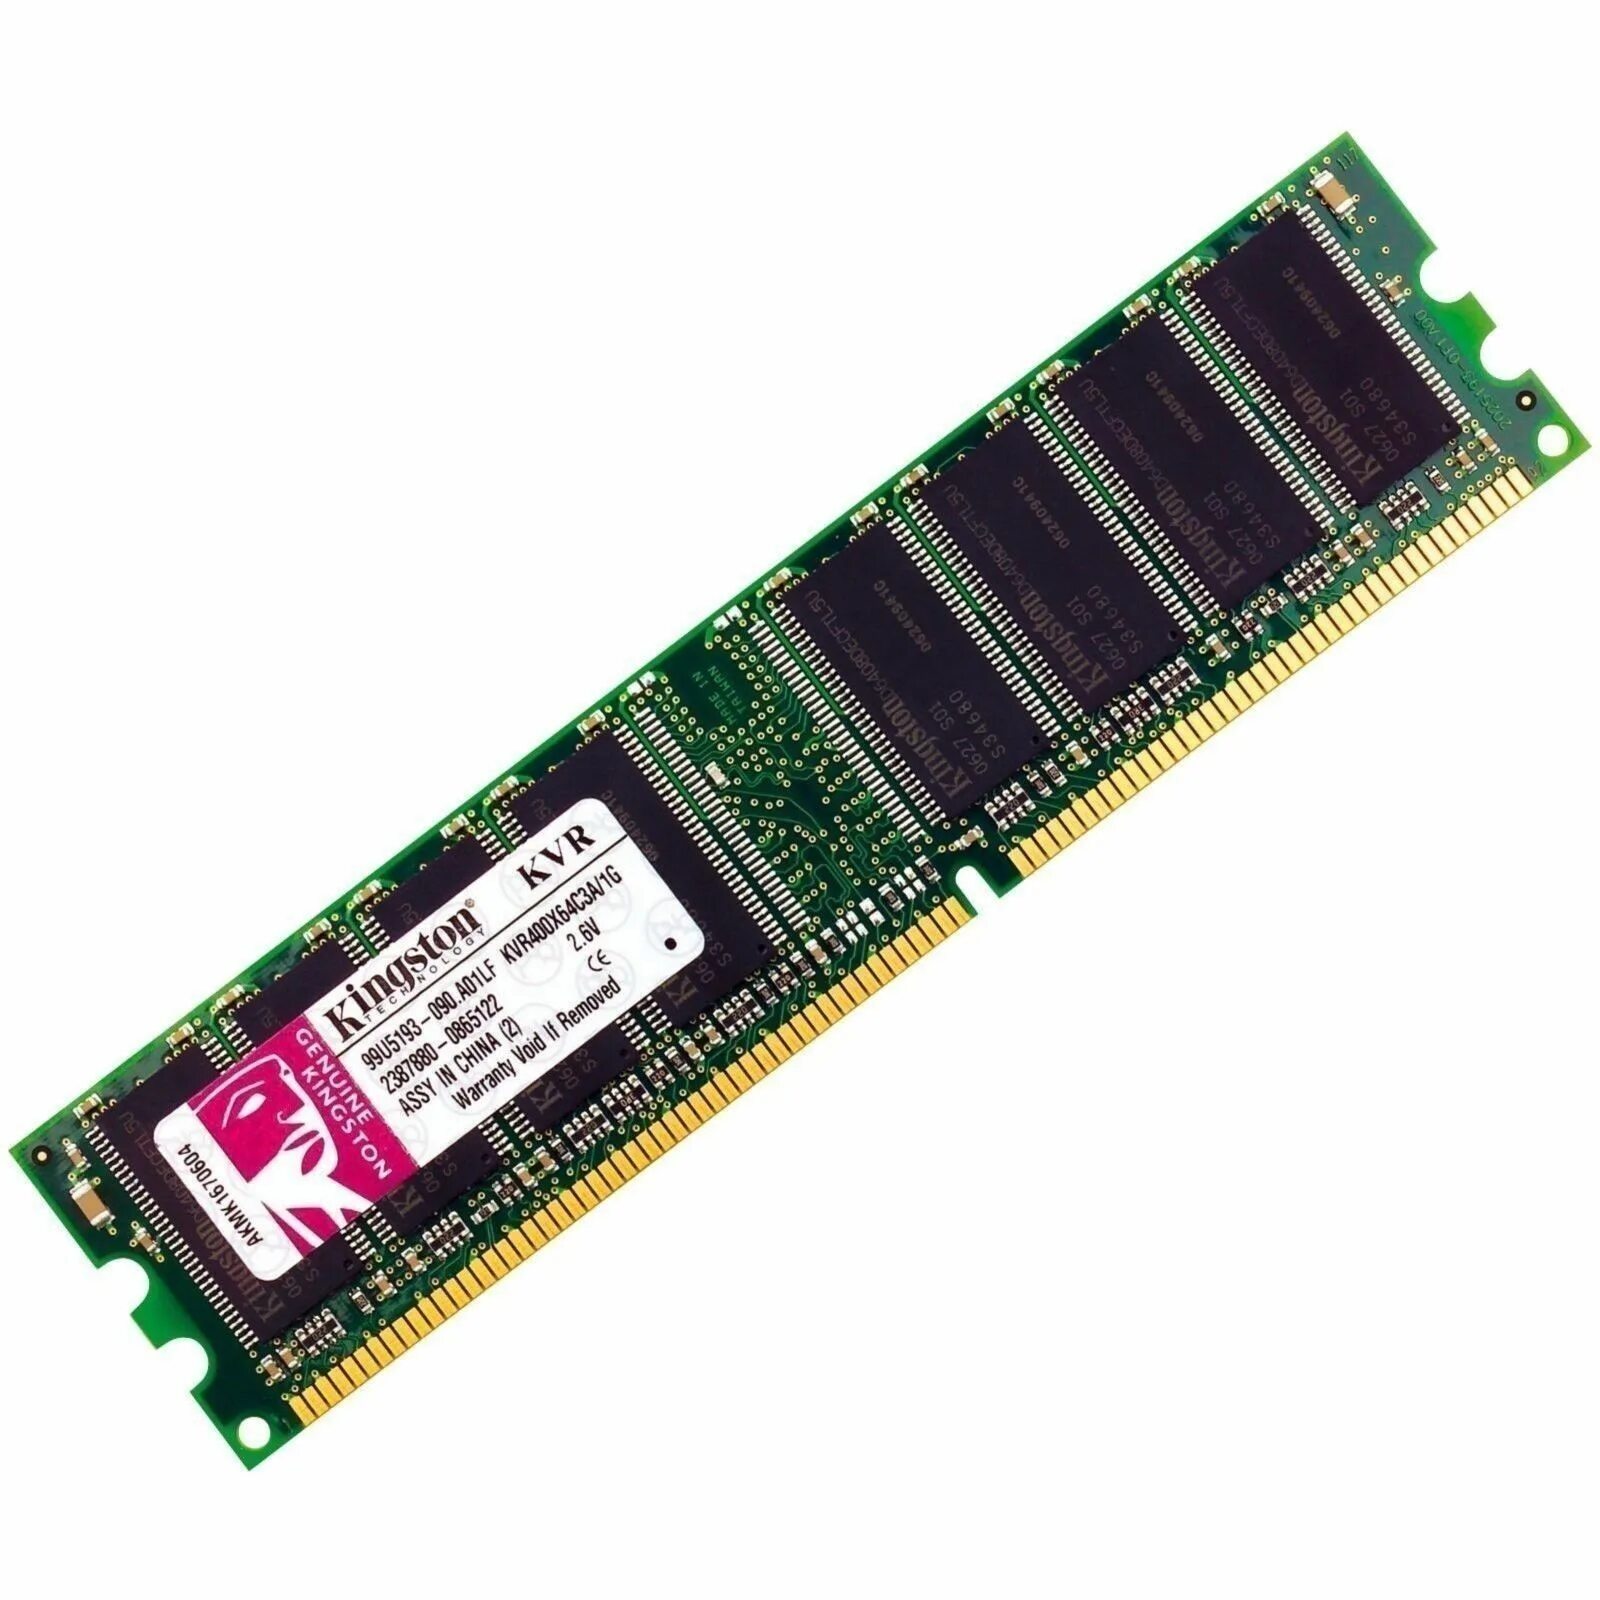 Kingston kvr400x64c3a/1g. Kvr400x64c3a/1g. Оперативная память DDR 400 MHZ. Оперативная память 1 ГБ 1 шт. Kingmax DDR 400 so-DIMM 1 GB.